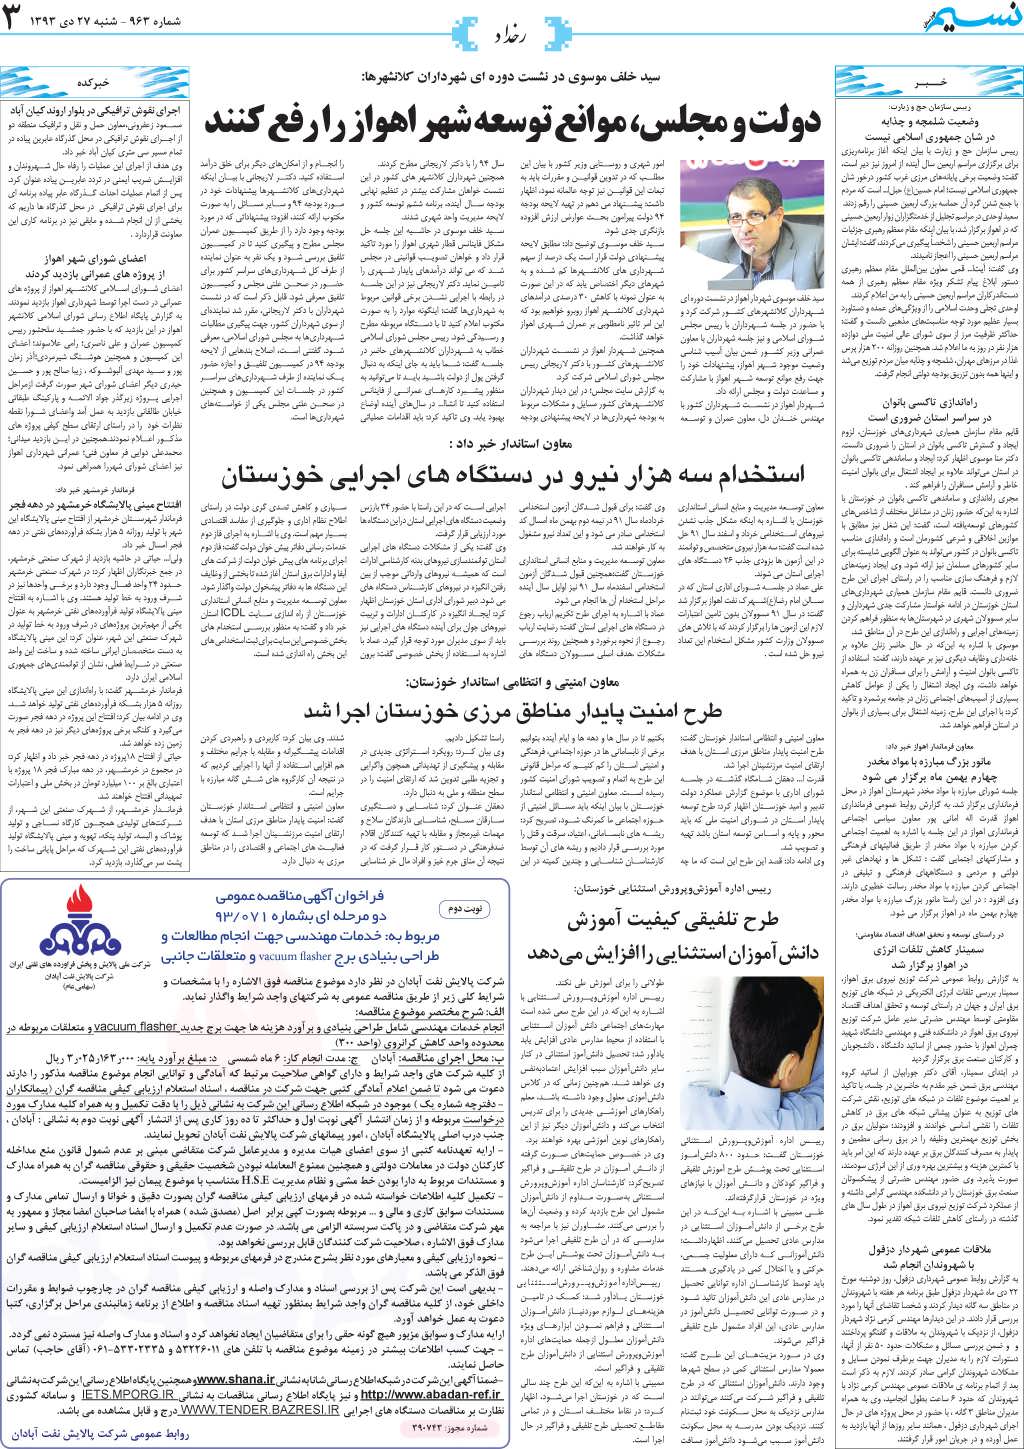 صفحه رخداد روزنامه نسیم شماره 963